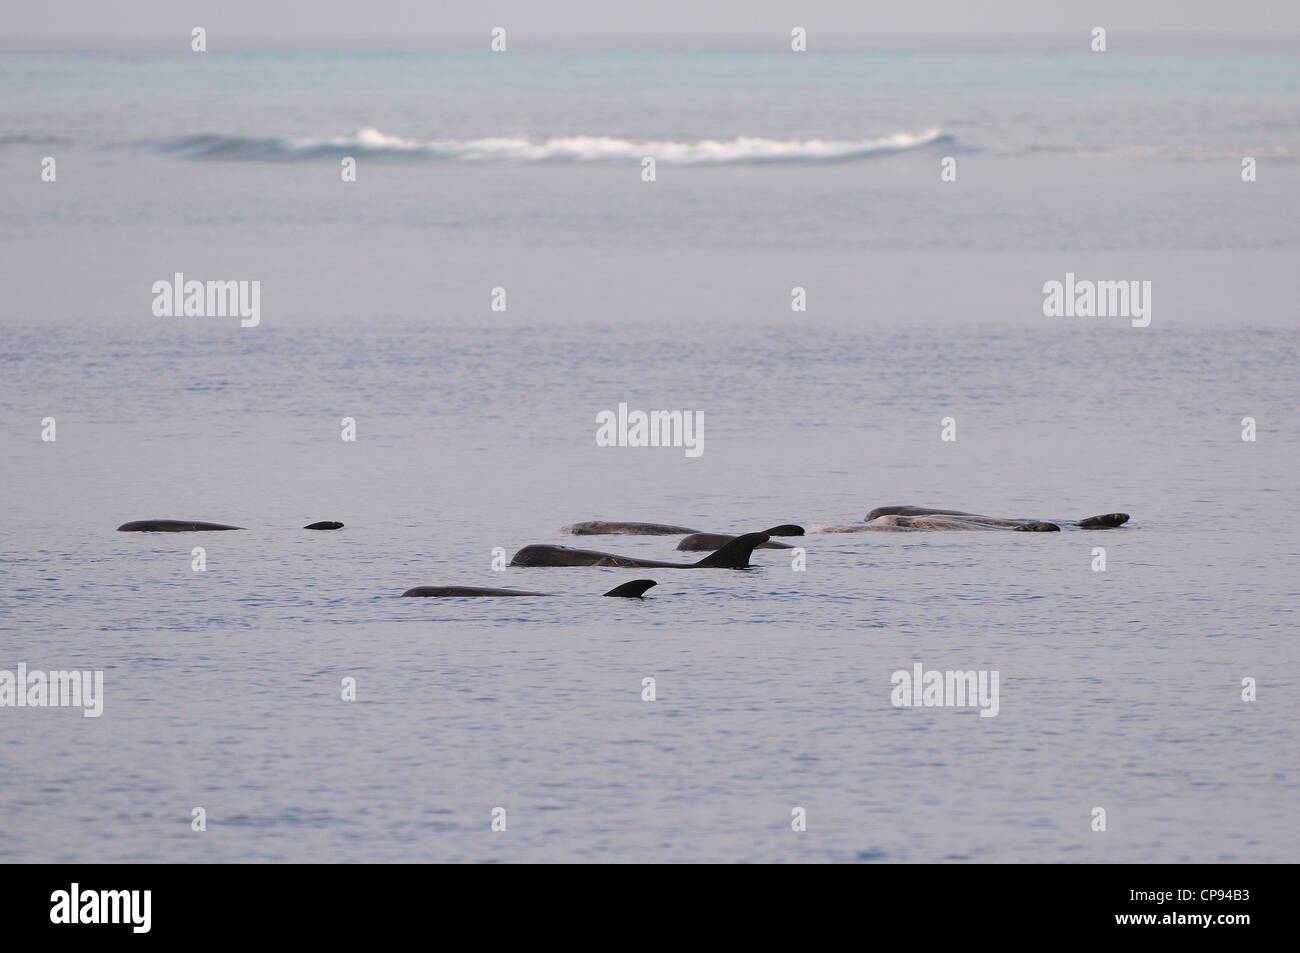 El calderón gris (Grampus griseus) pod descansando o registro en superficie, las Maldivas Foto de stock